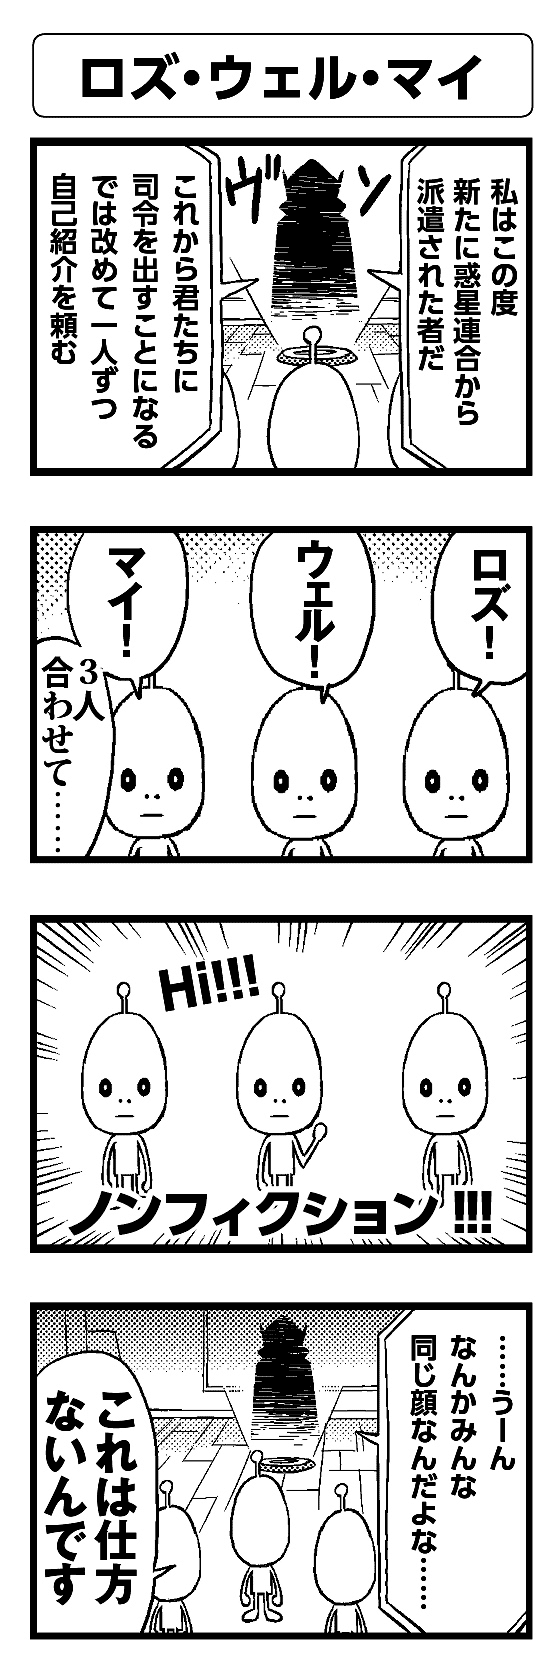 ロズ・ウェル・マイ - 四コマ漫画ノンフィクション #002